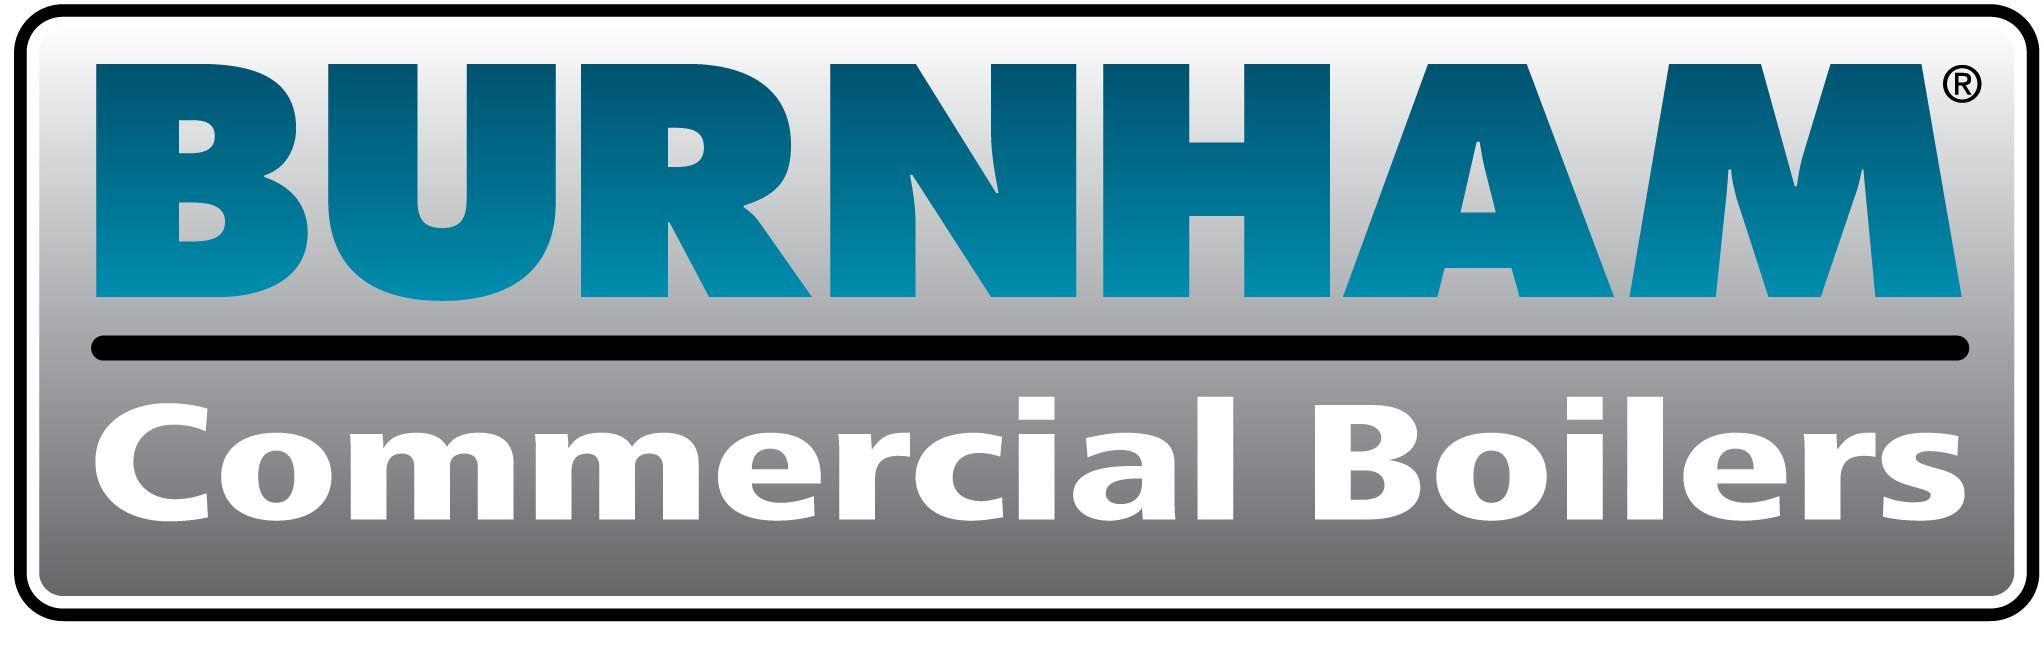 Burnham Boiler Logo - Burnham Commercial Boilers > BSI Mechanical, Inc.